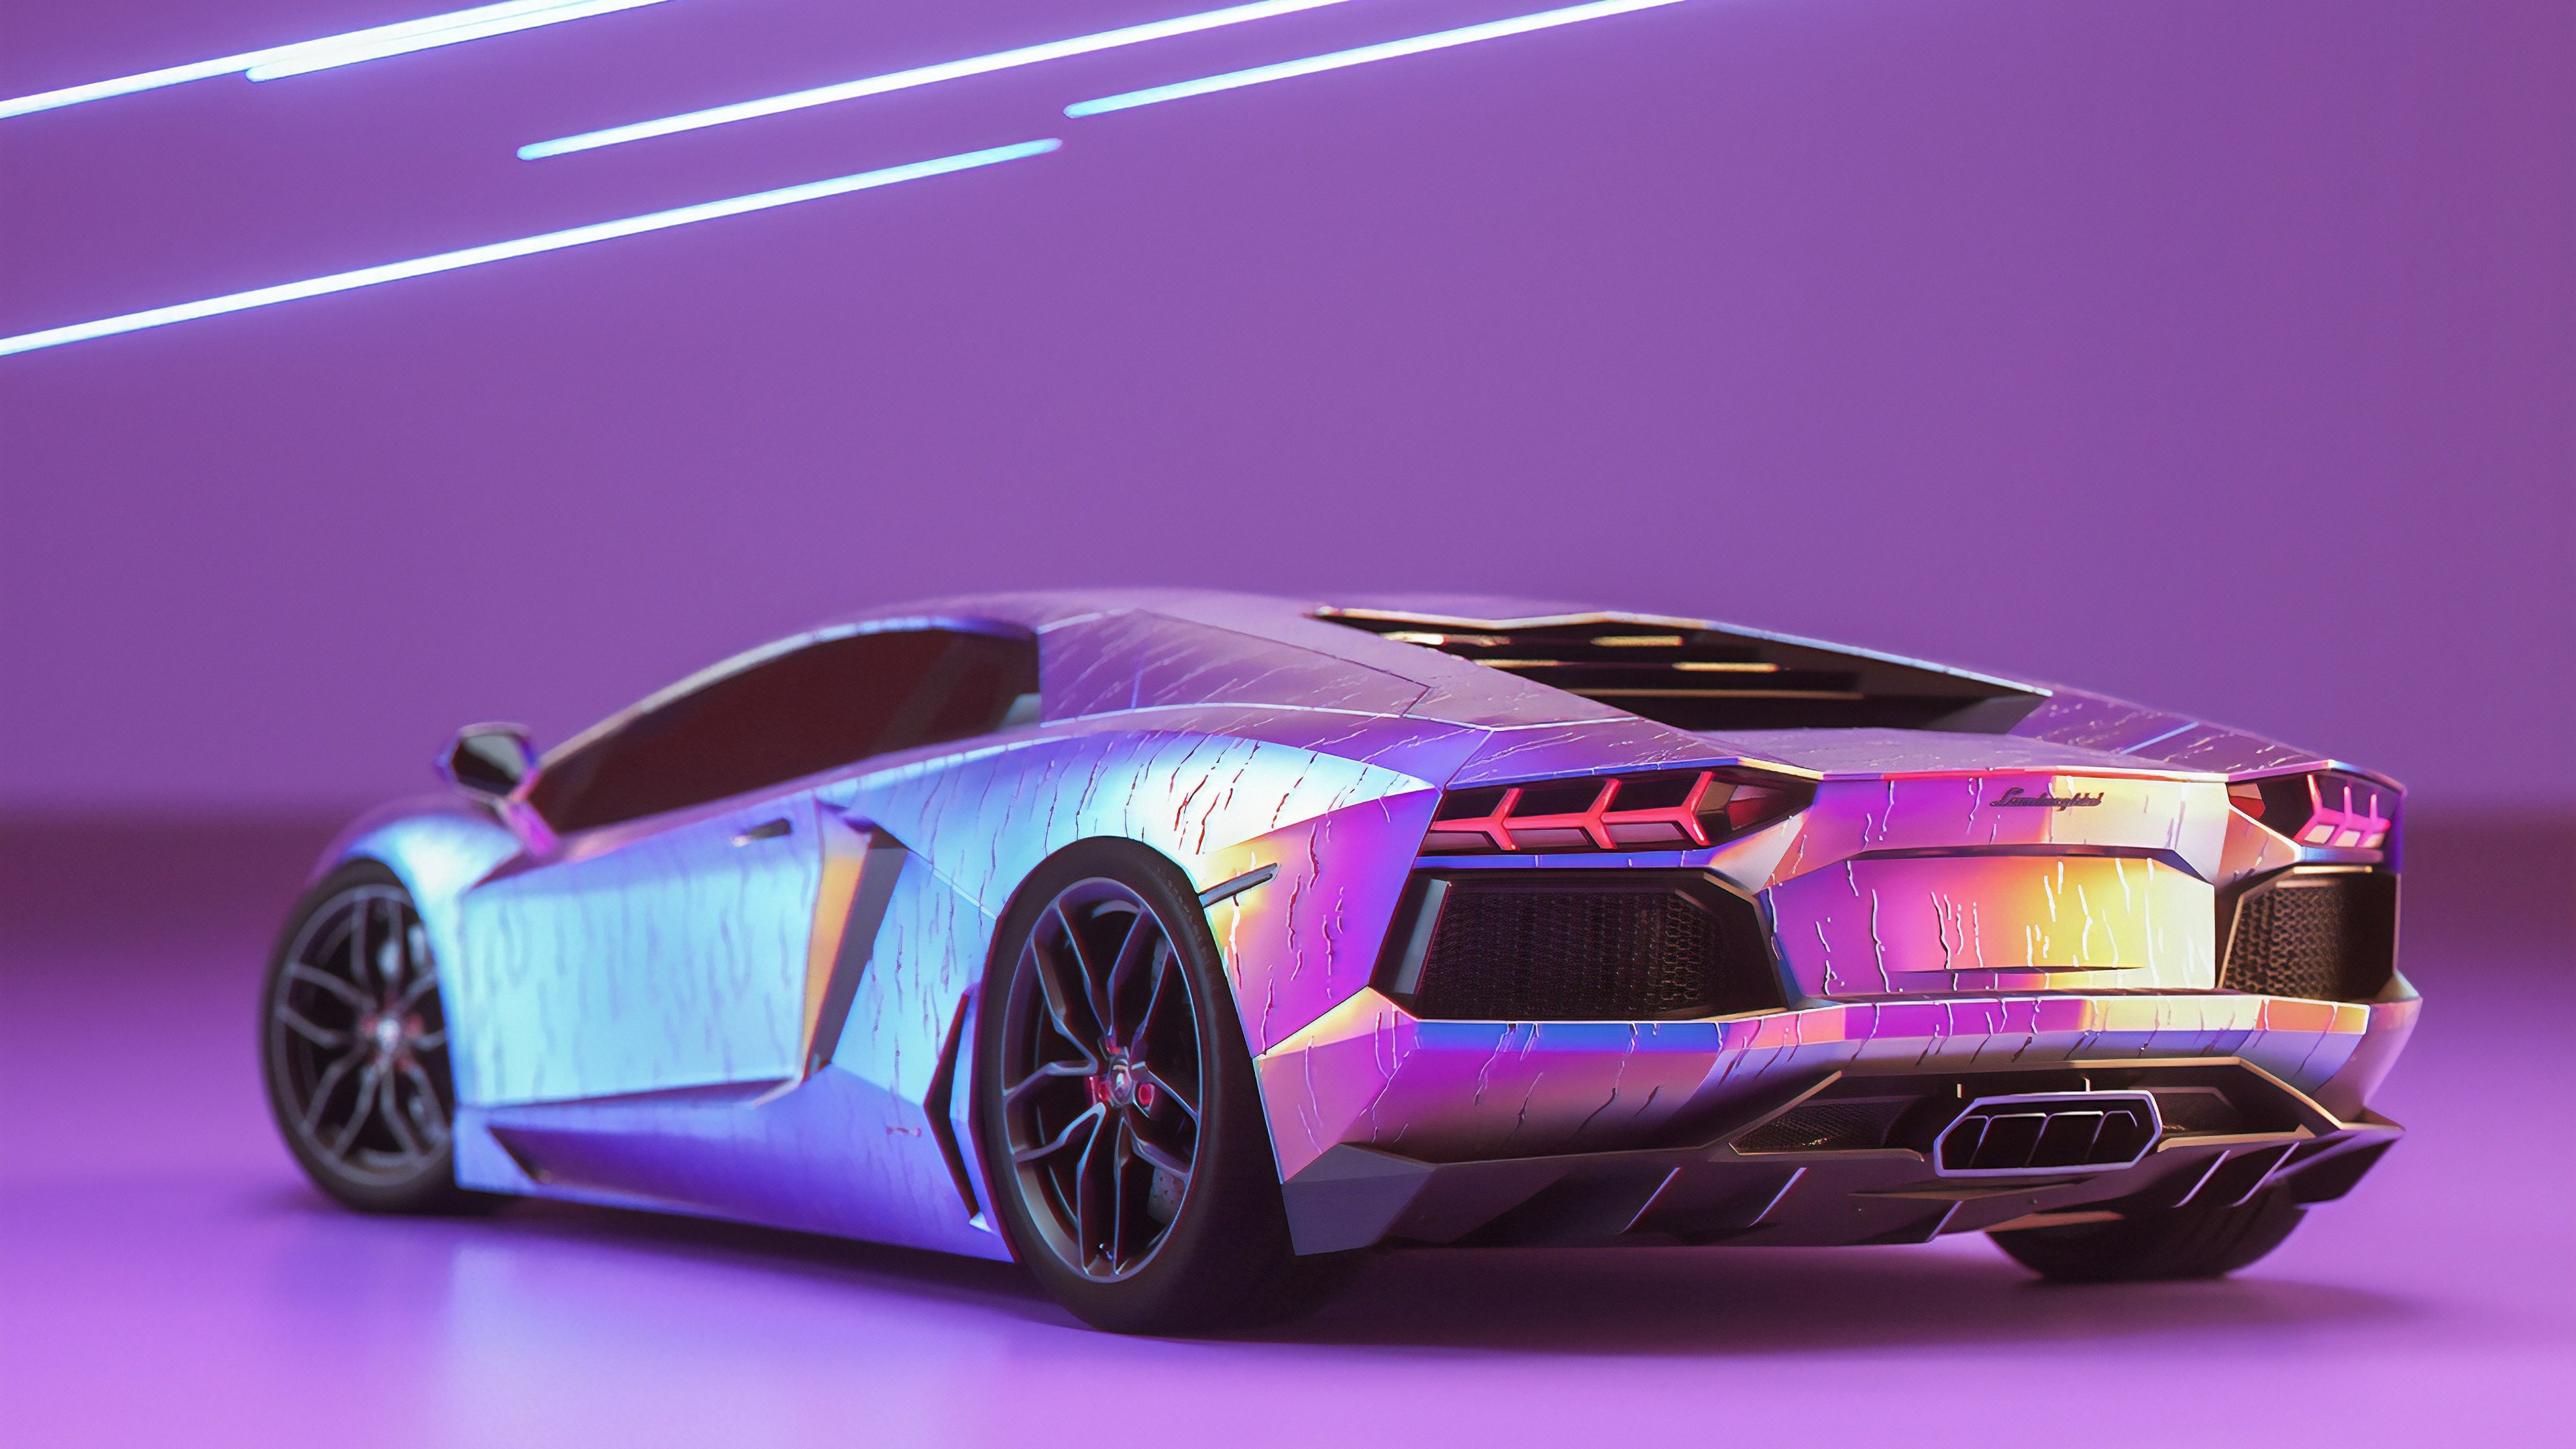 Với dàn đuôi xe đầy sức cuốn hút của chiếc xe Lamborghini Aventador, hình nền Lamborghini Aventador Rear Wallpaper sẽ đưa bạn vào một không gian độc đáo với vẻ đẹp điêu khắc của siêu xe đỉnh cao này. Xem hình ảnh để cảm nhận ngay nhé!